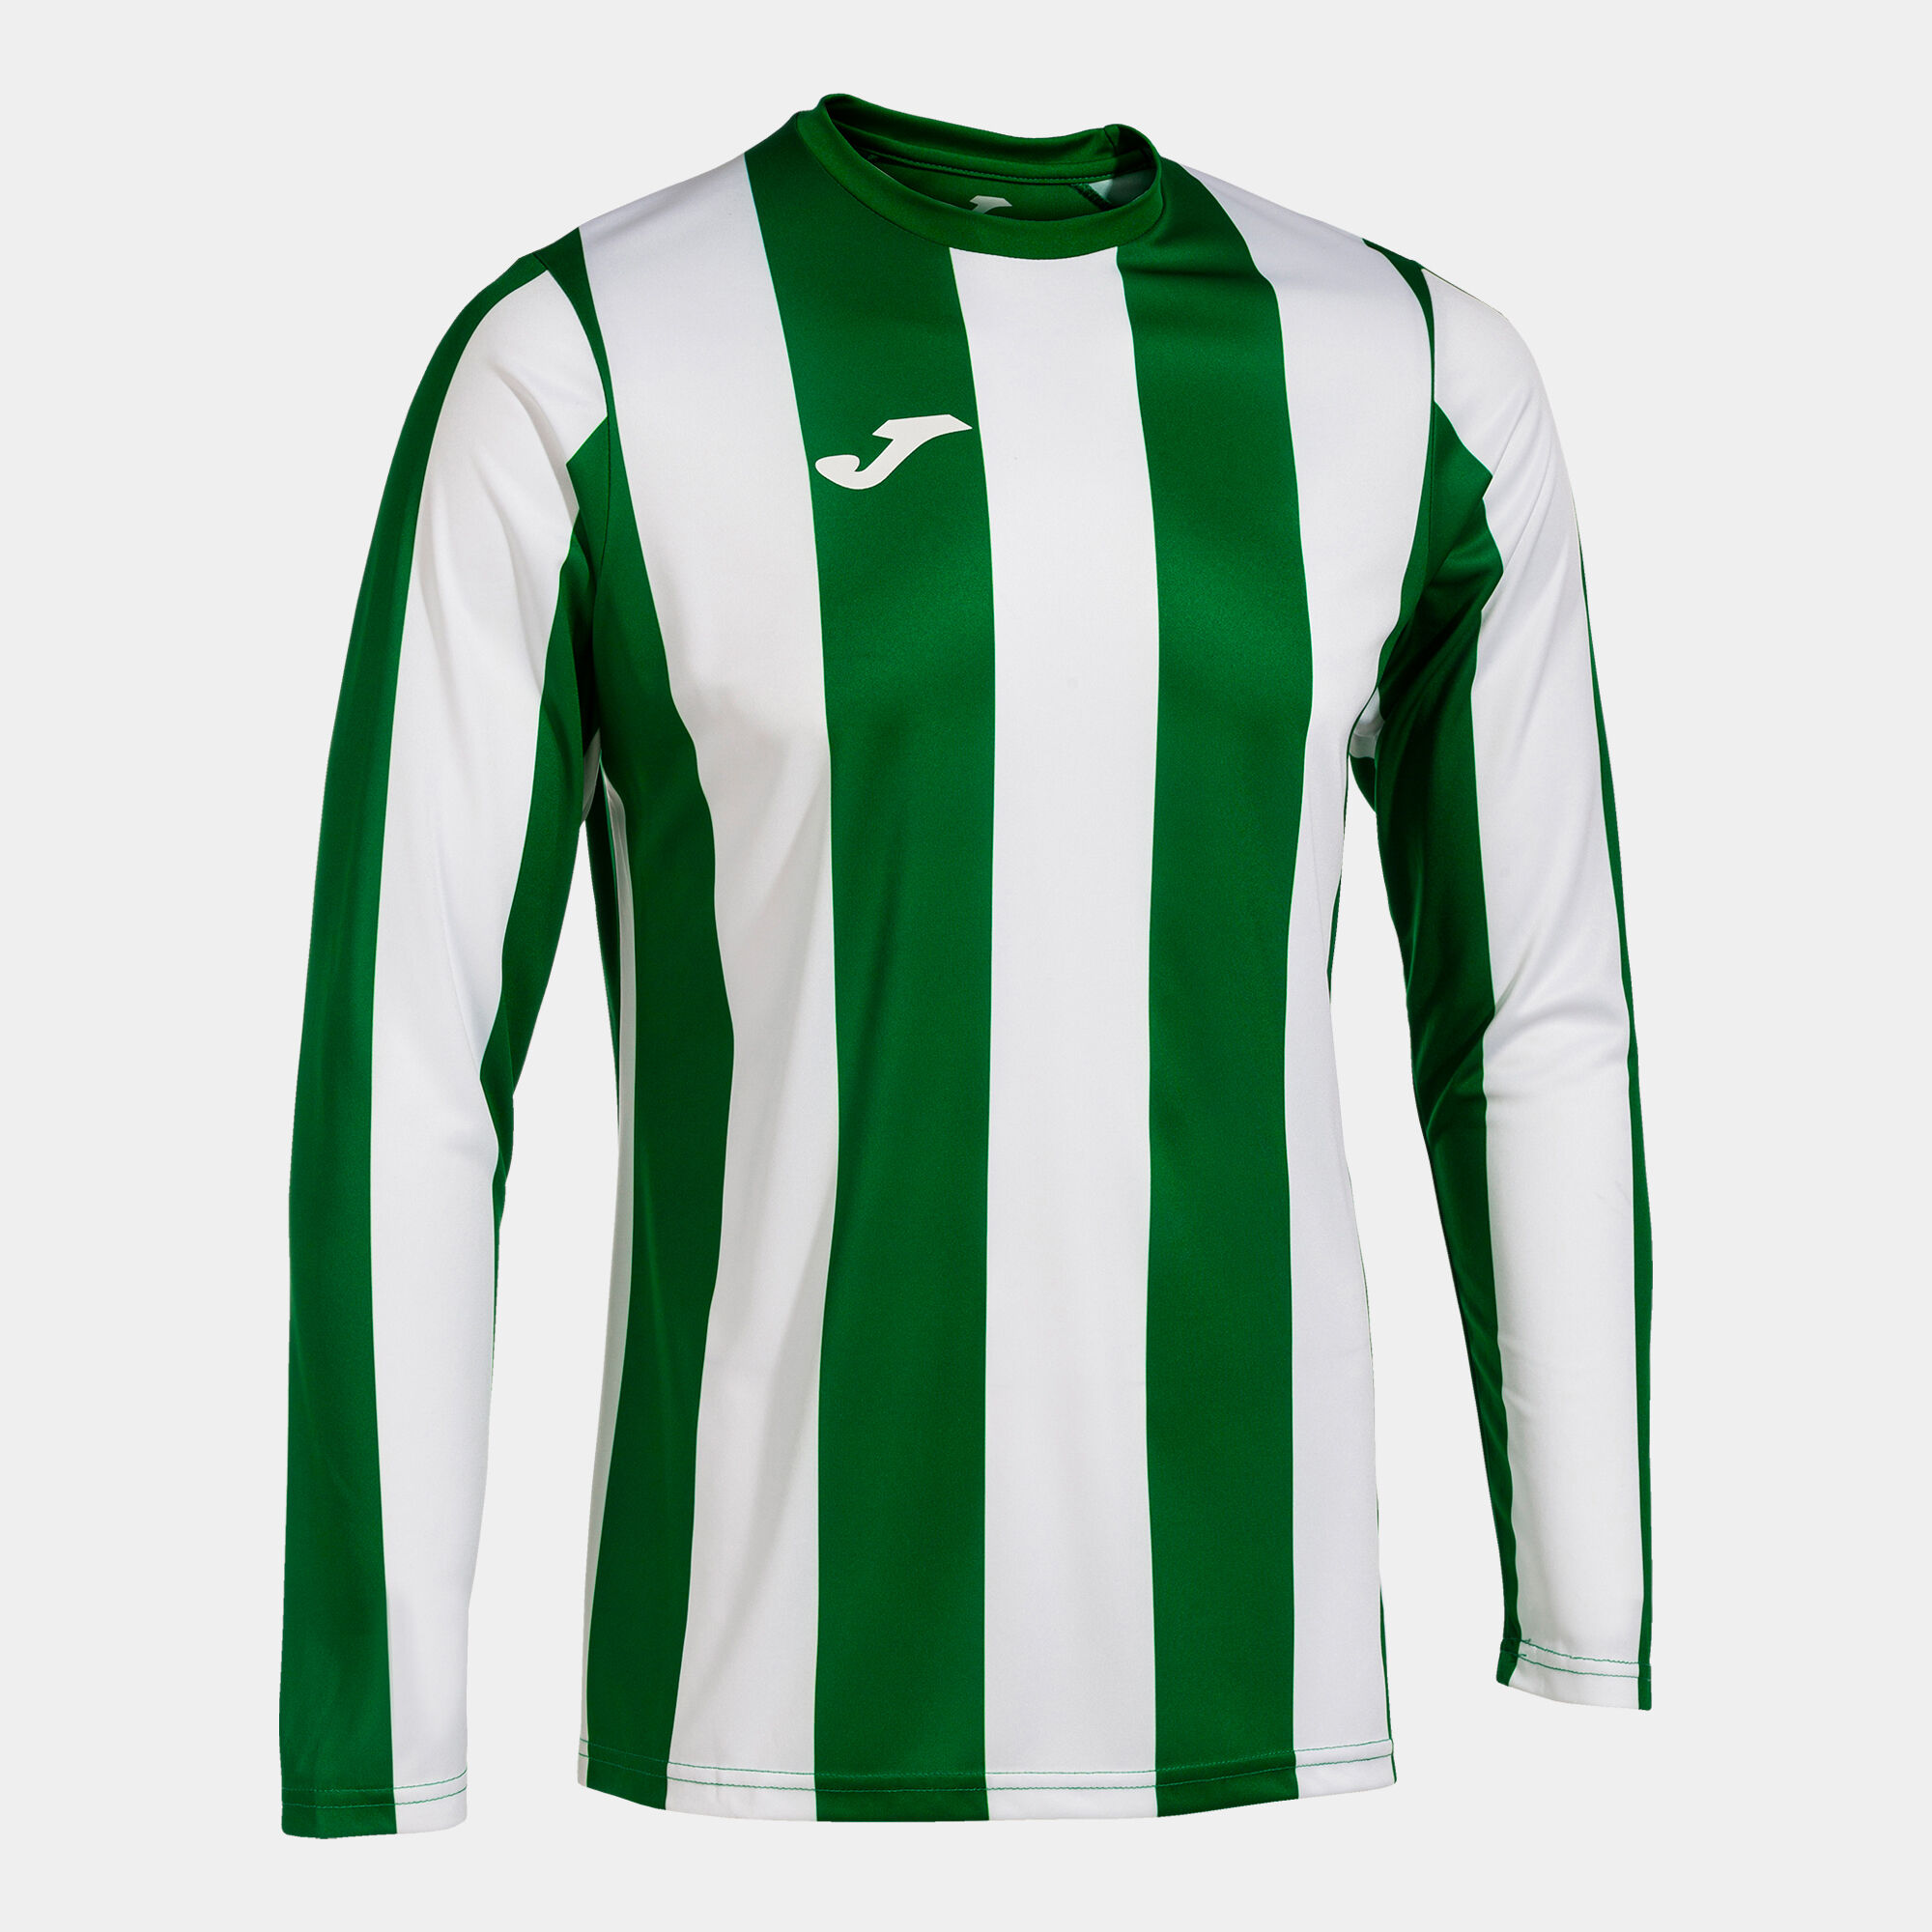 Camiseta manga larga hombre Inter Classic verde blanco